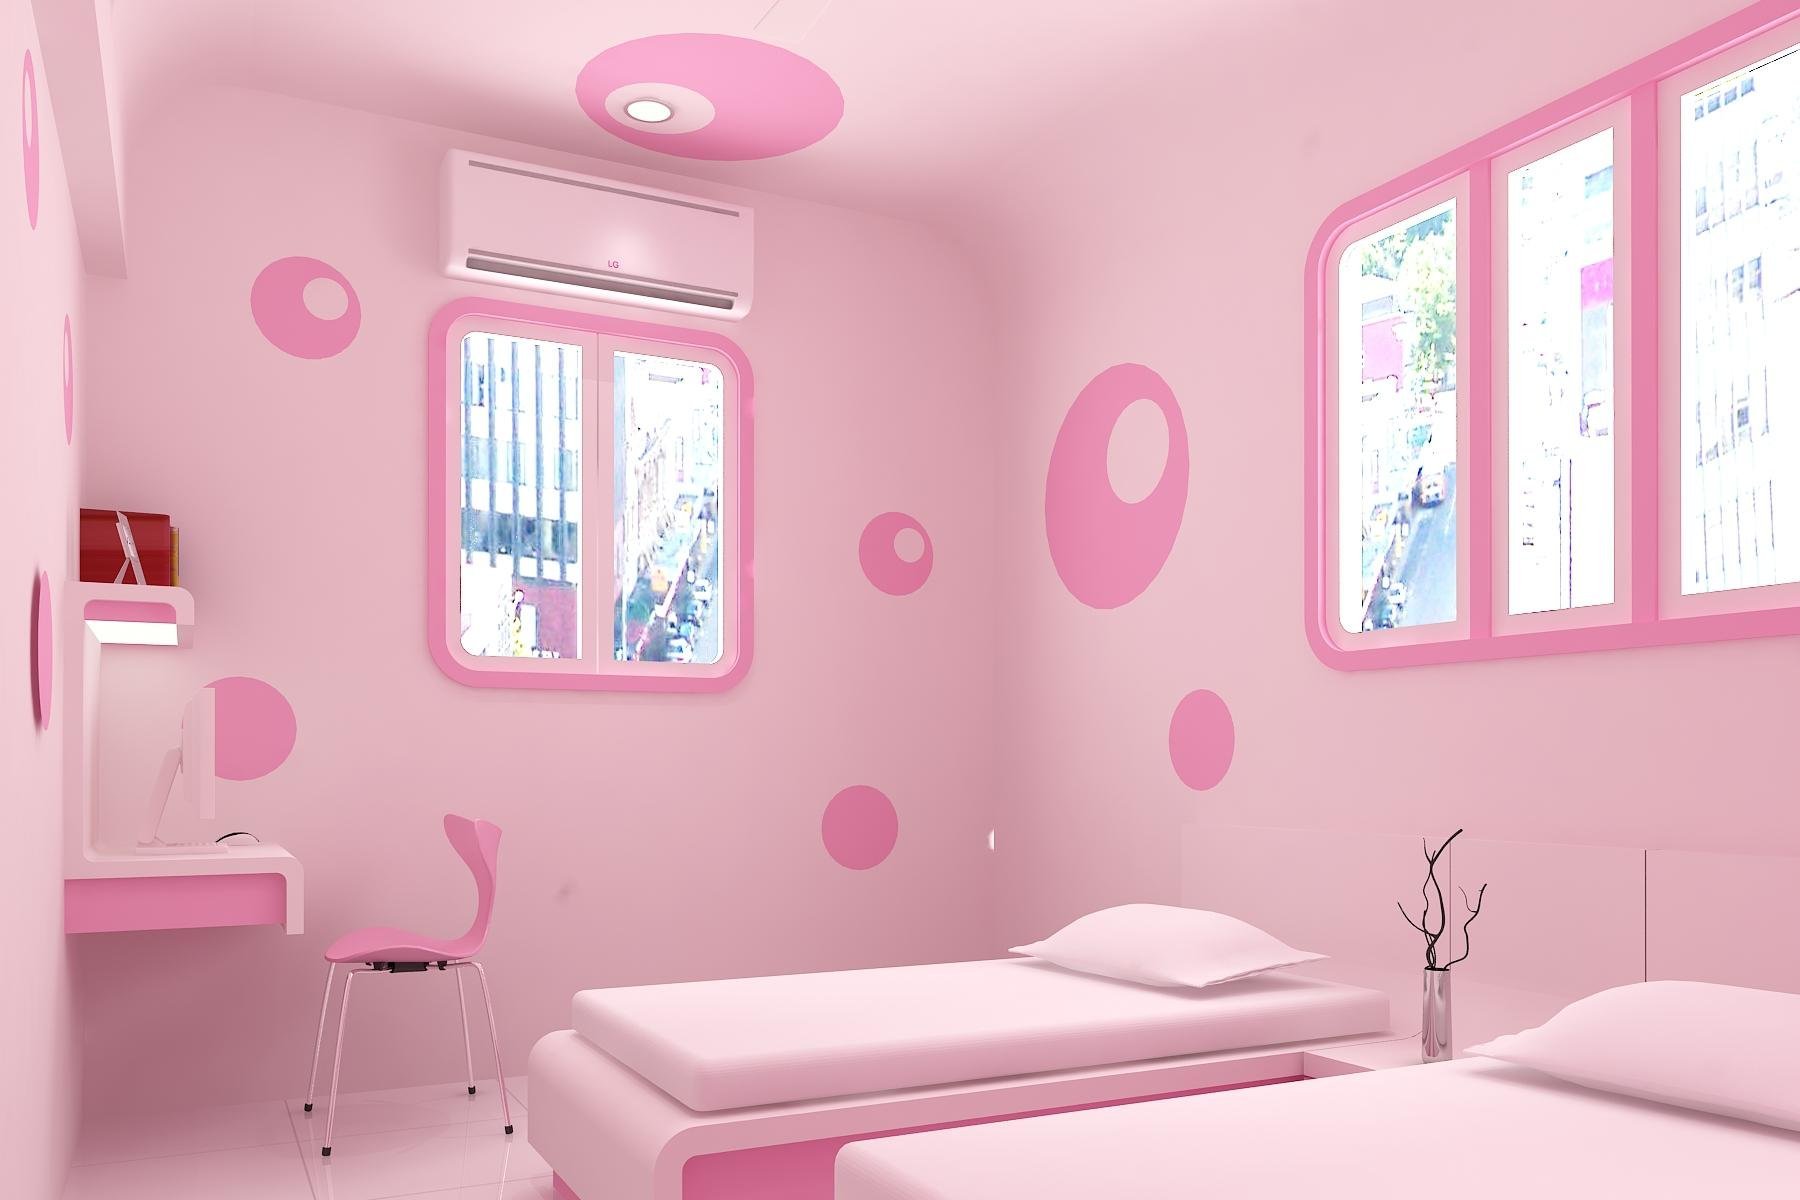 Комната в розовых тонах. Розовая комната. Розовая детская комната. Комната в розовом цвете интерьер. Розовые стены в детской.